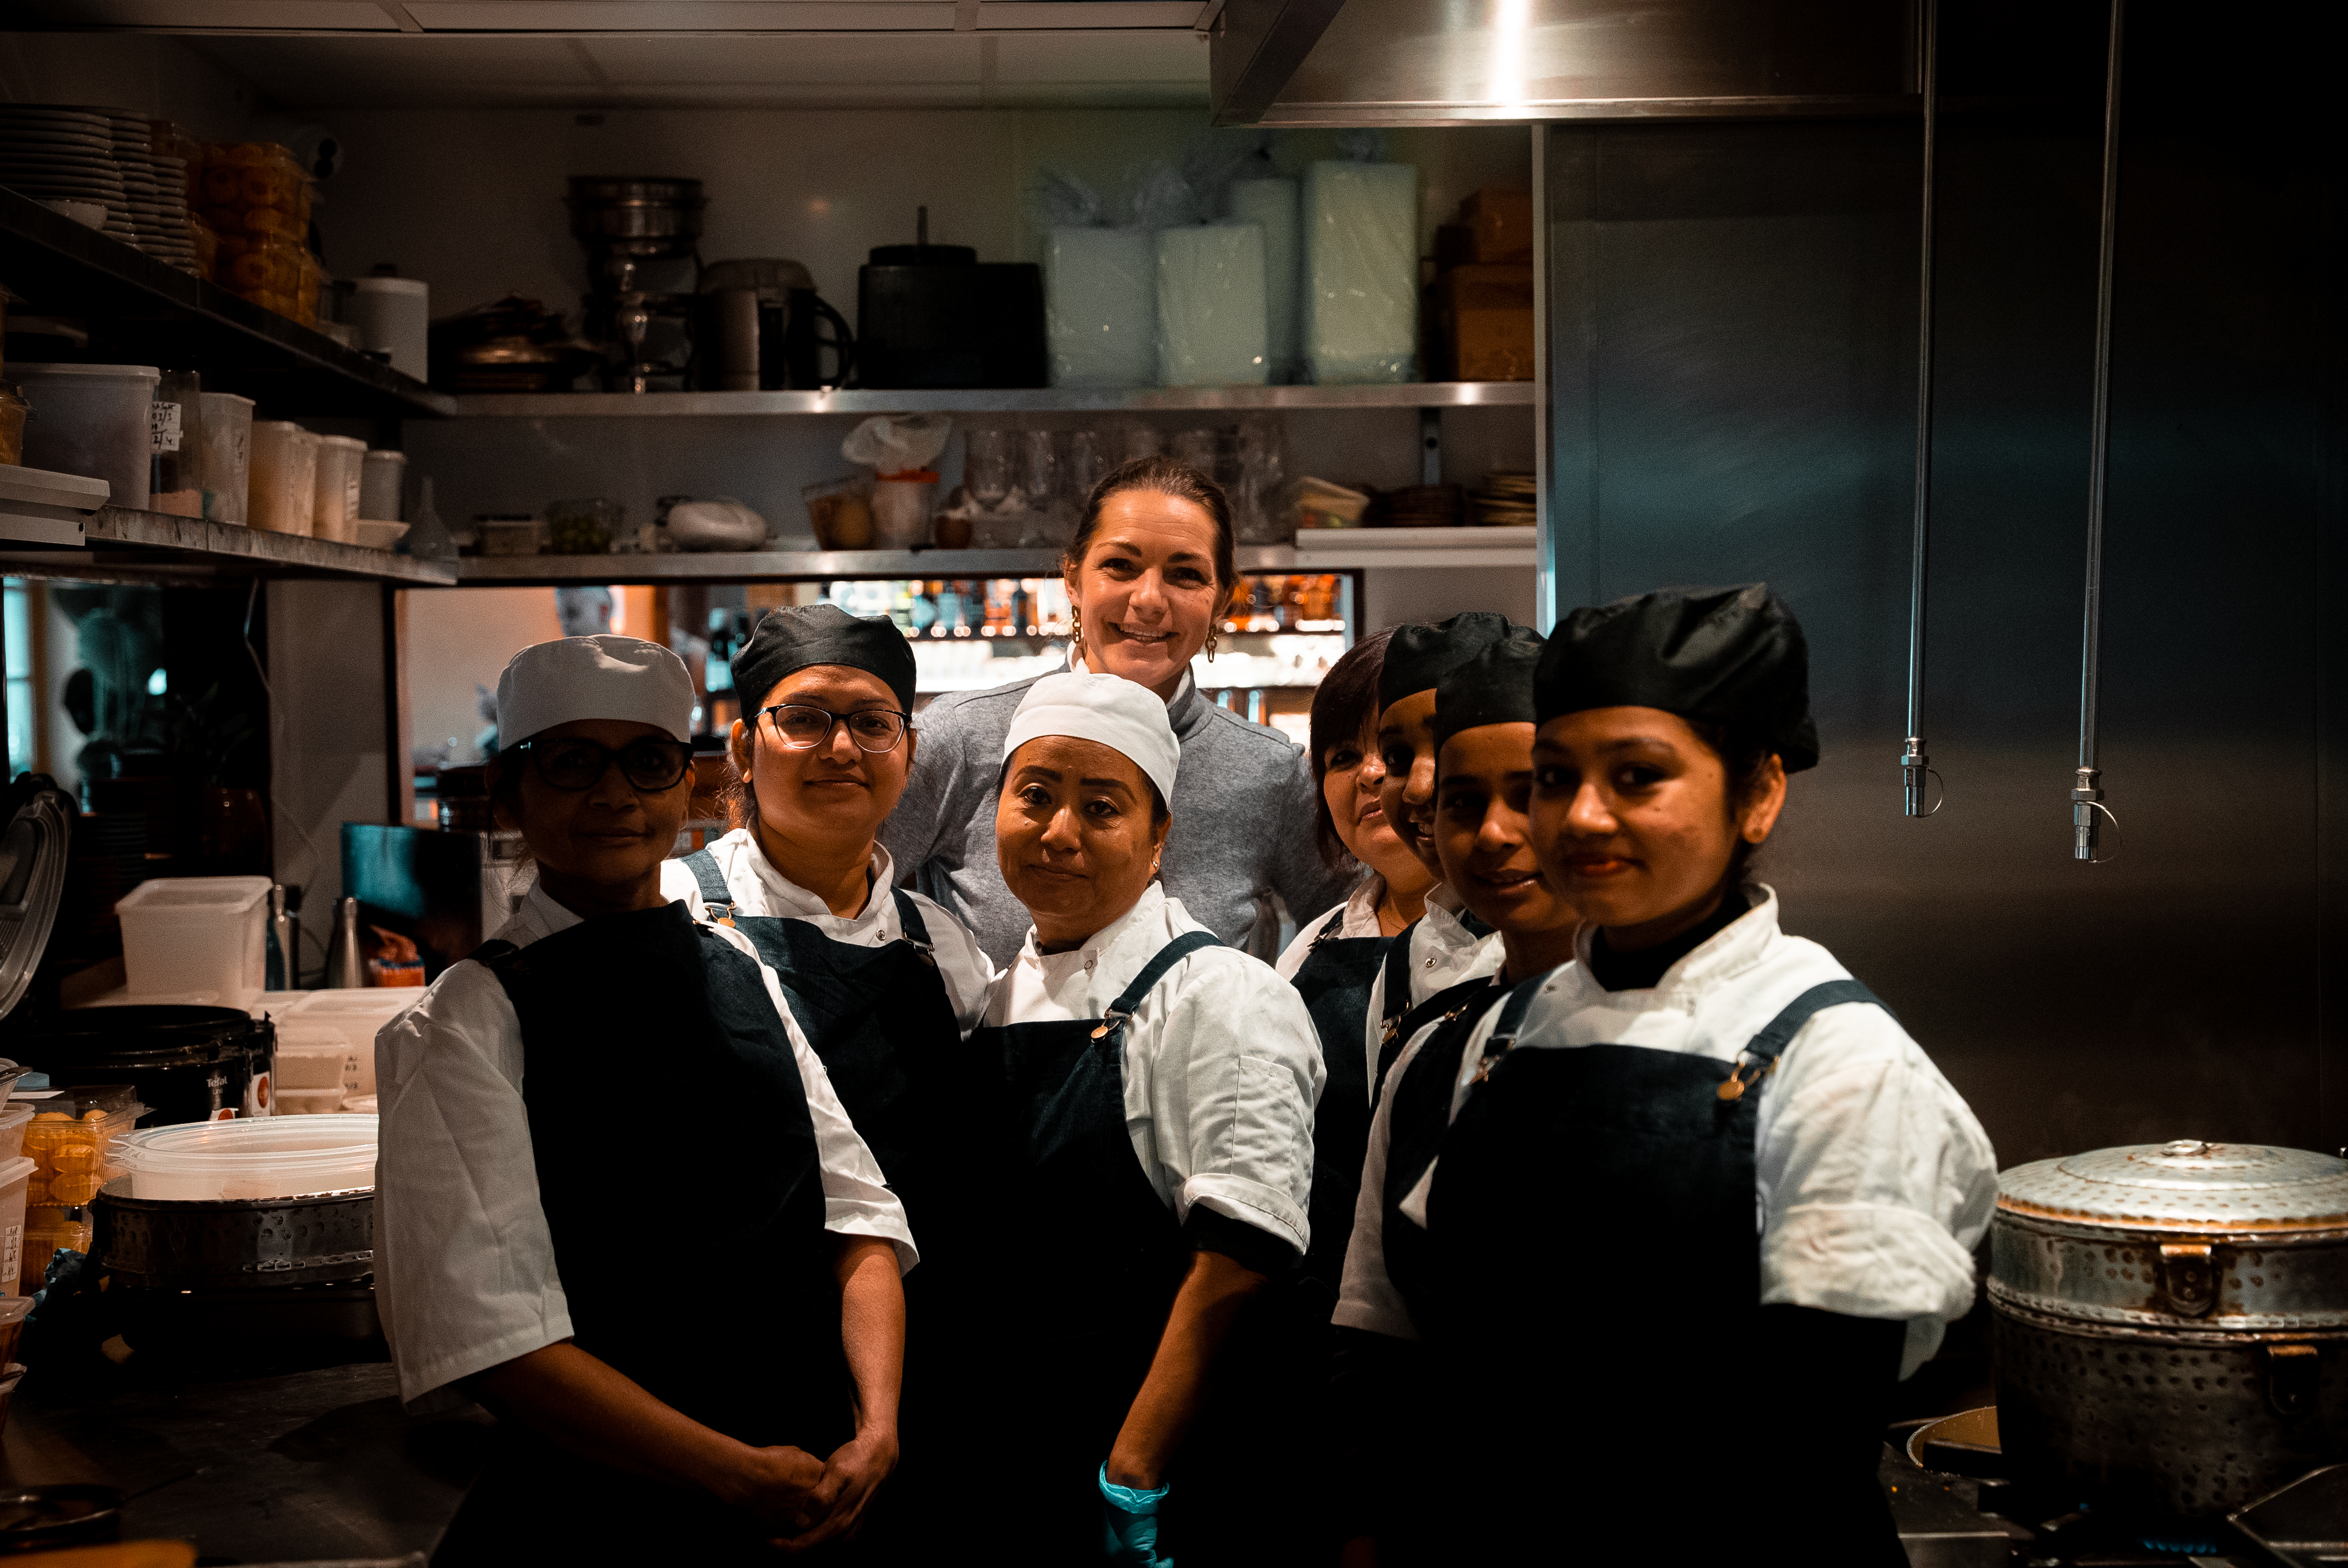 Food Inspirations hoofdredacteur Maaike de Reuver tussen de dames in de keuken van Darjeeling Express